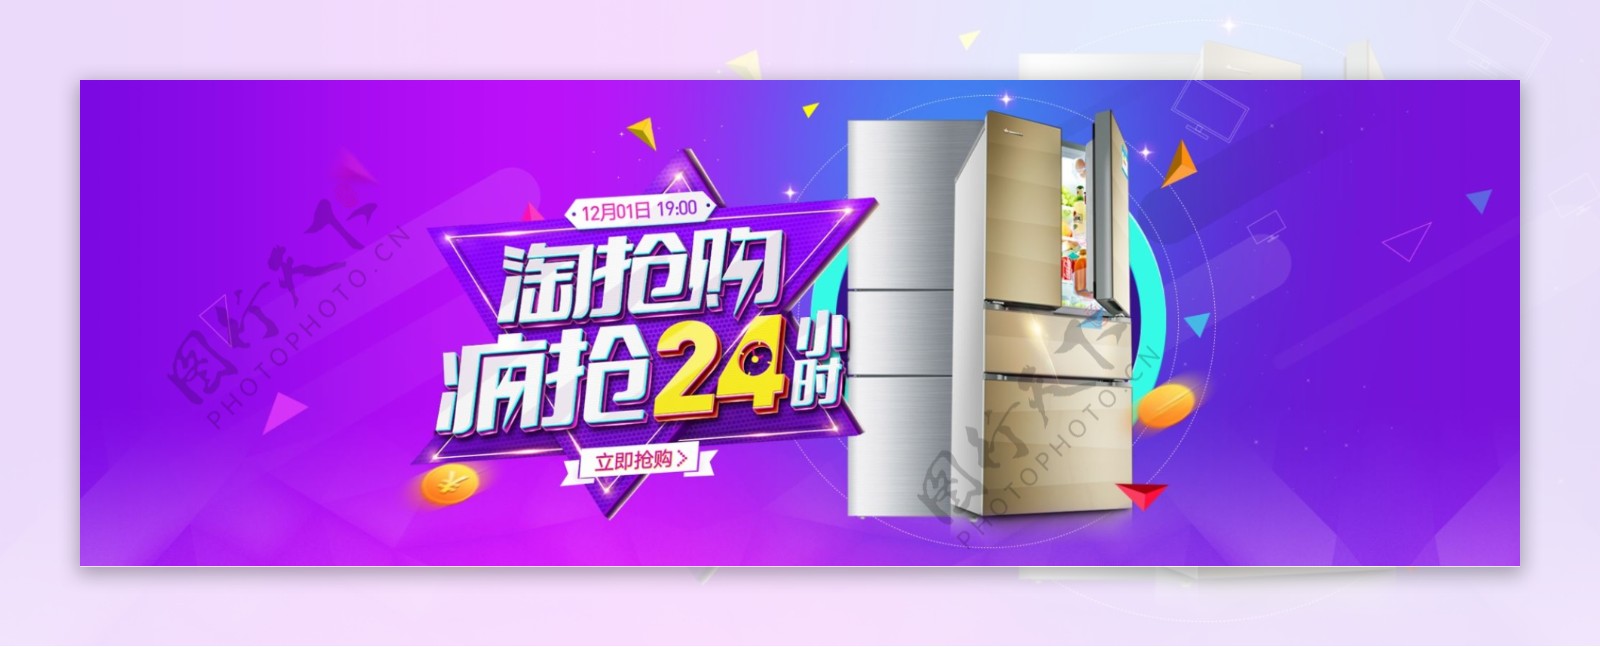 电商淘宝天猫电器城焕新季促销海报banner字体设计模板